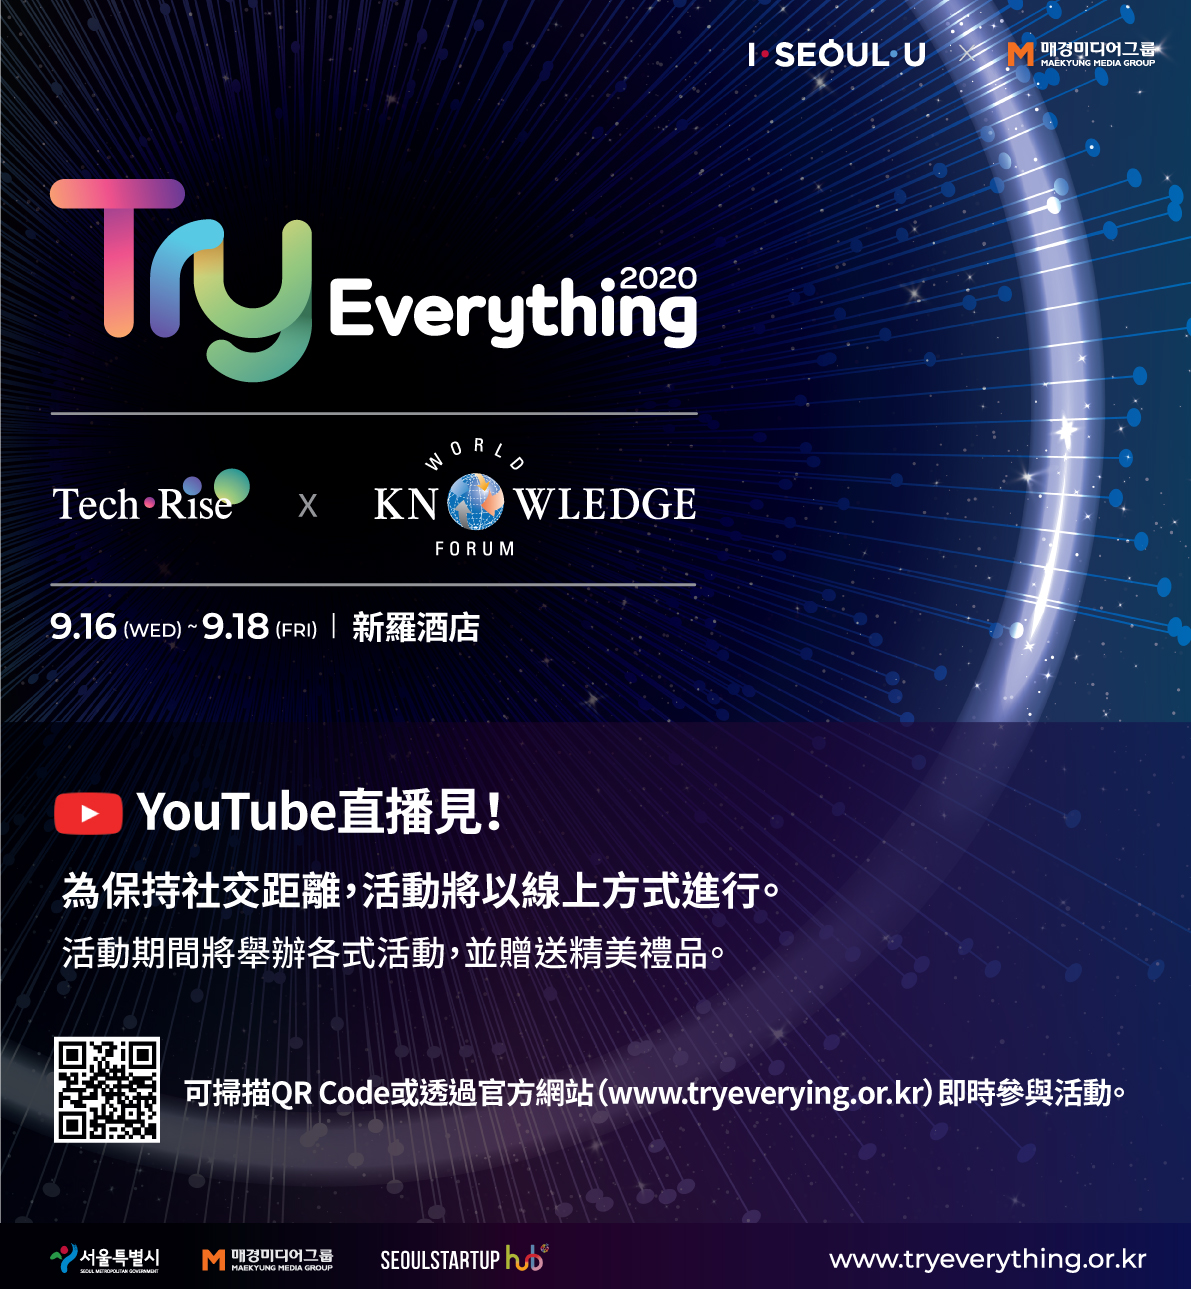 全球初創企業大慶典Try Everything 2020、2020年09月16日~2020年9月18日（共三天）
以無觀眾、不見面方式舉辦www.tryeverything.or.kr